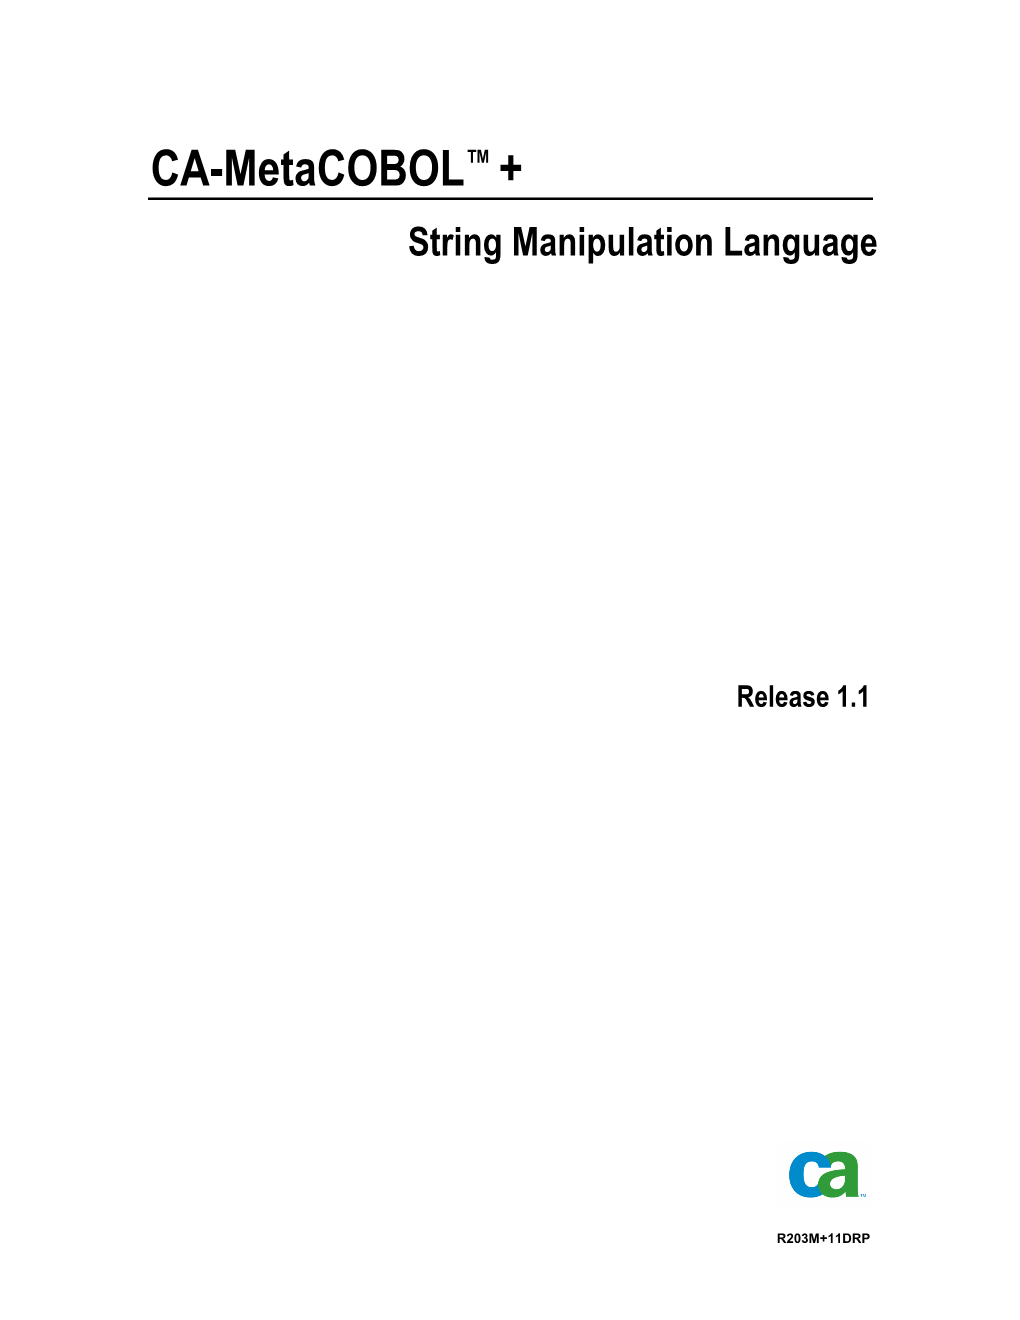 CA-Metacobol+ String Manipulation Language Statements